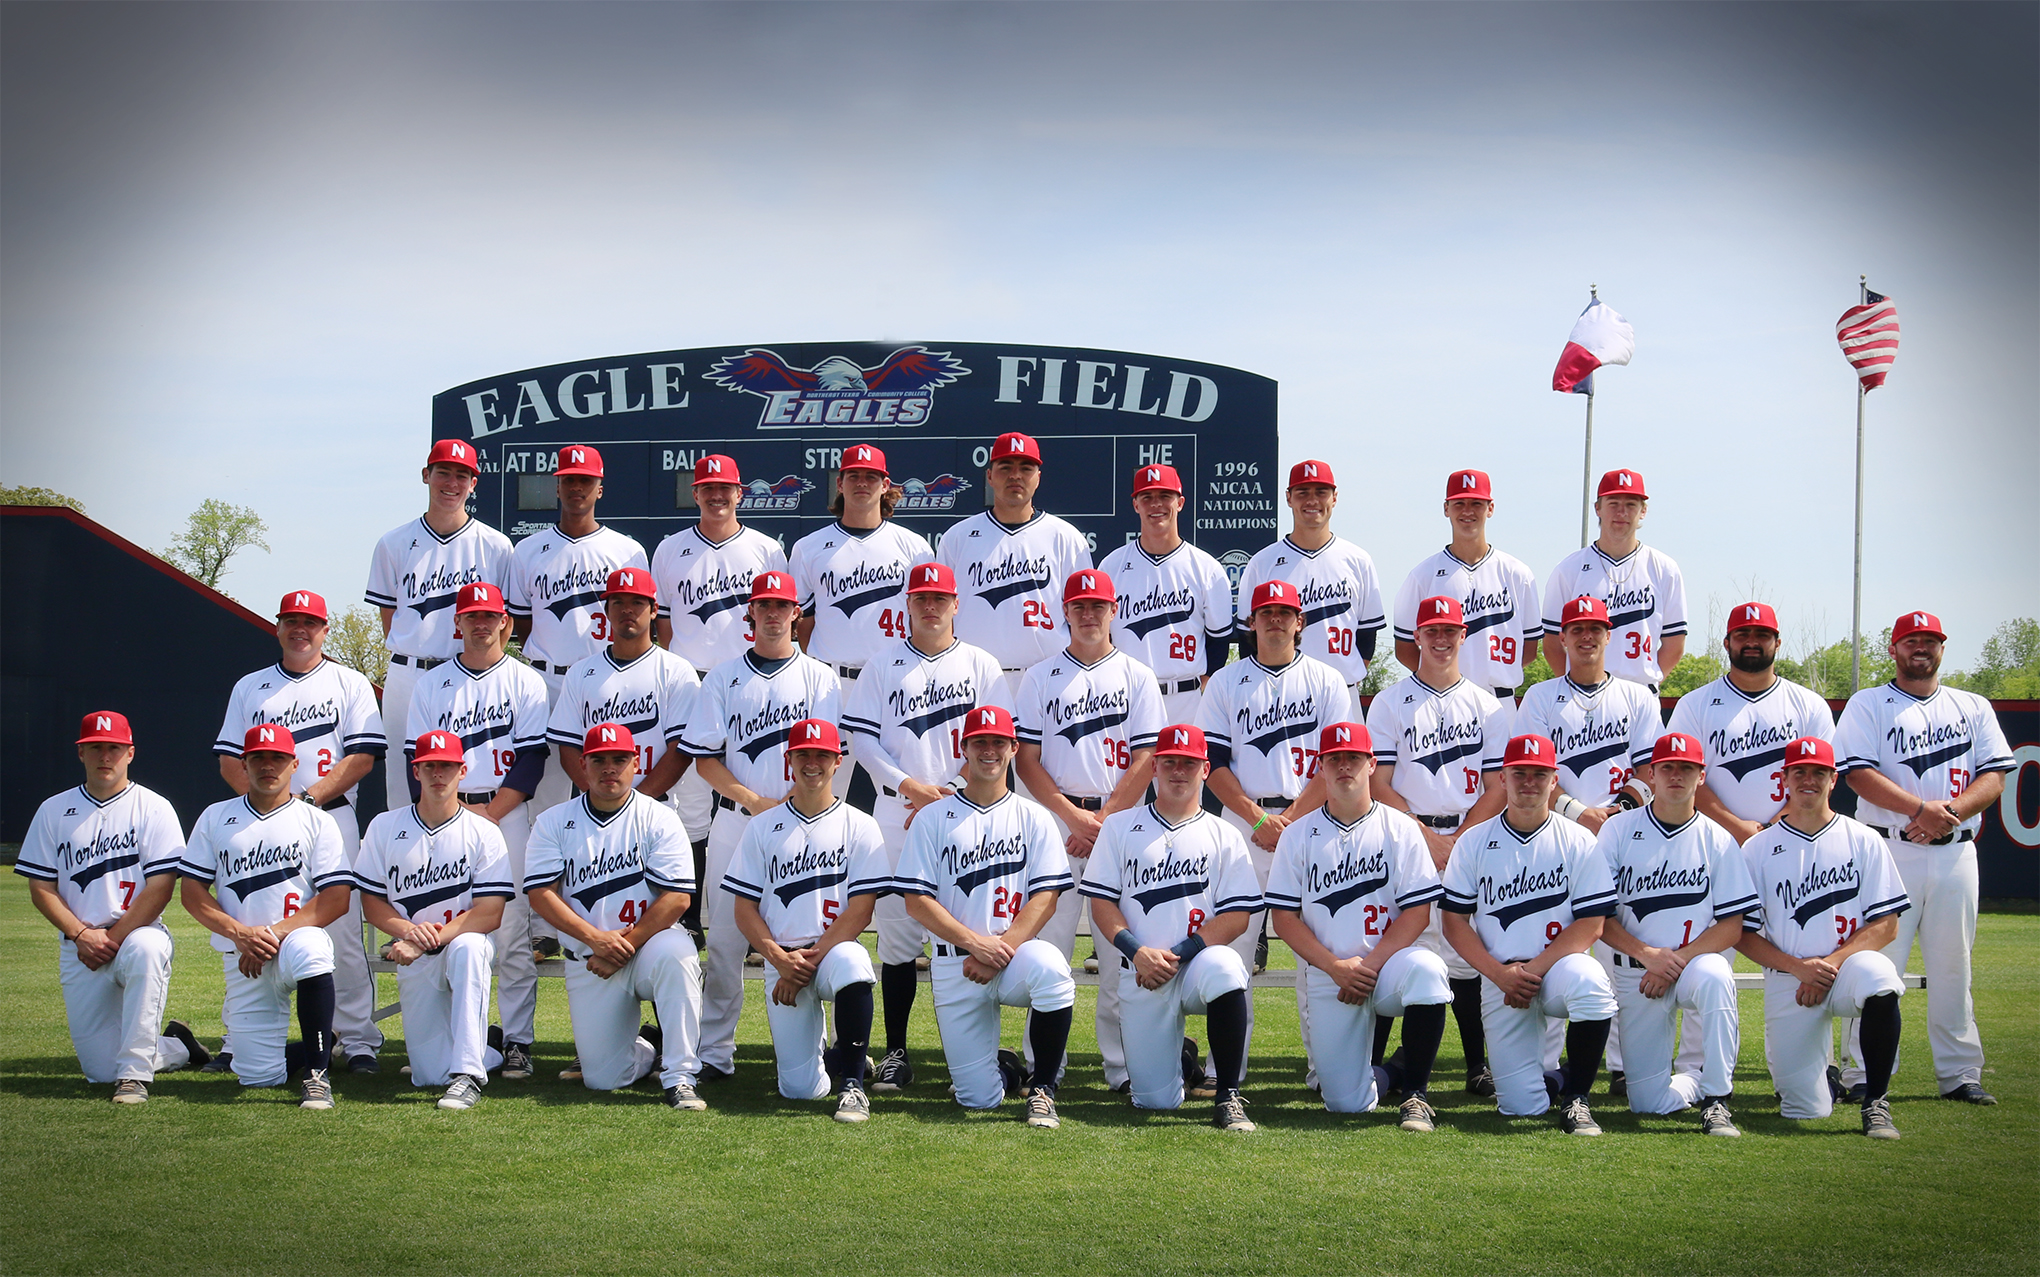 NTCC /uploads/2018/05/eagles-baseball-team.jpg